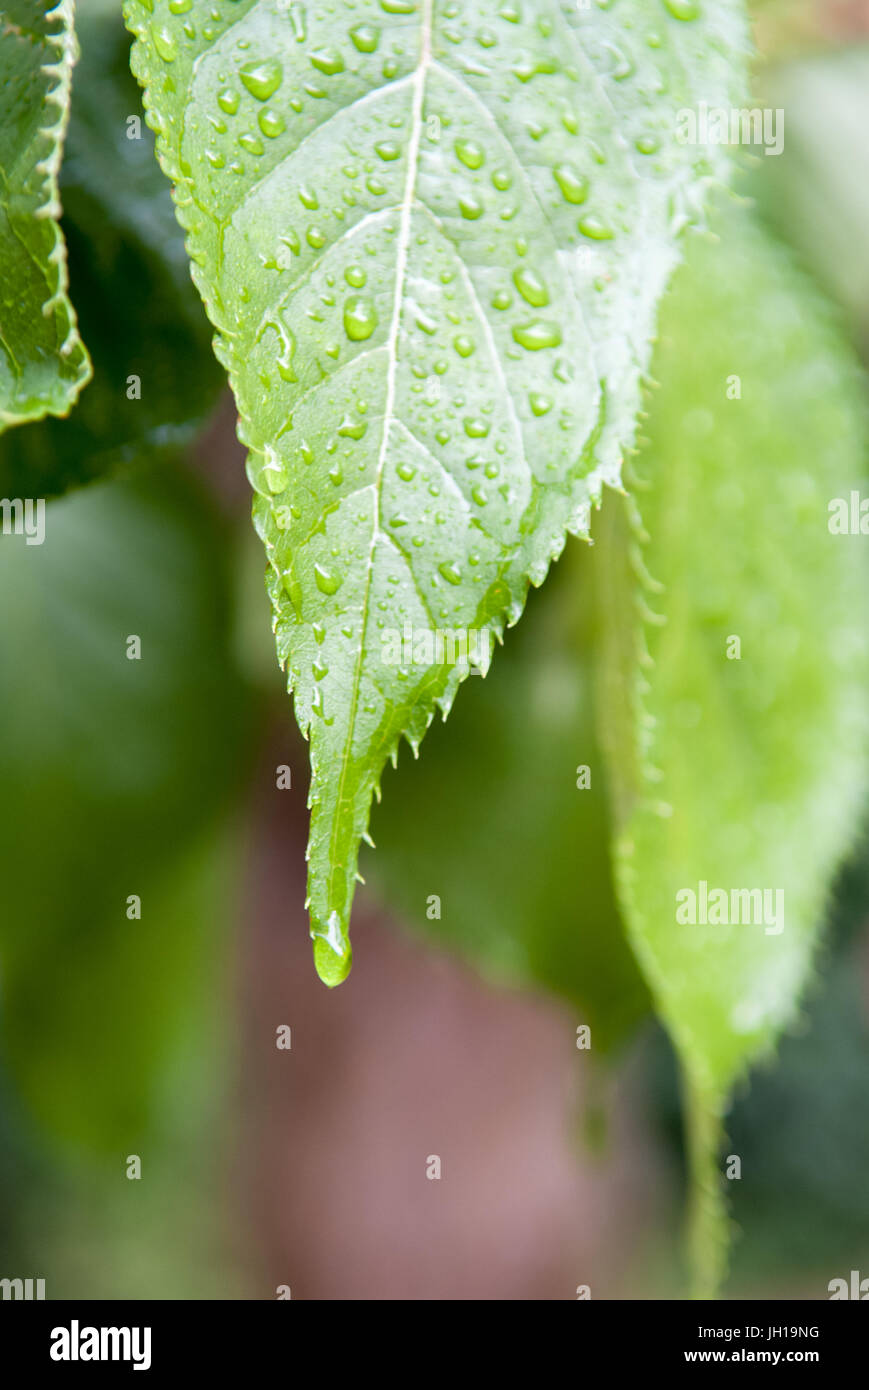 Goutte d'eau de pluie sur une feuille verte Banque D'Images